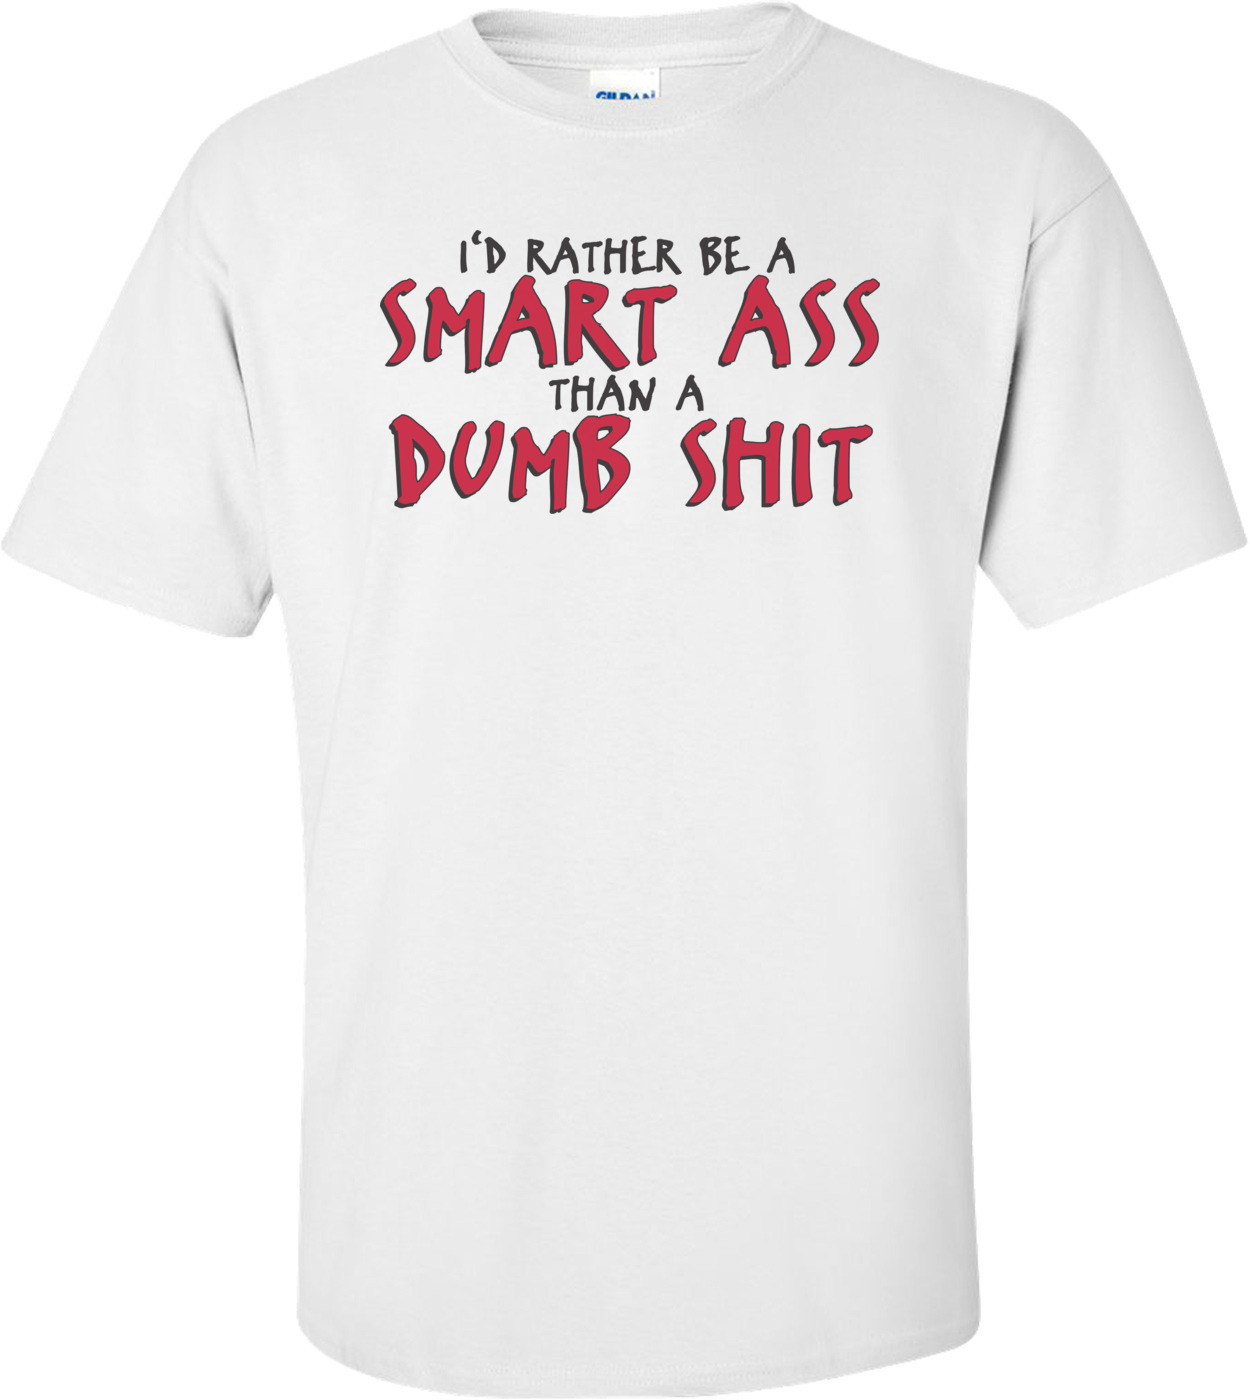 I'd Rather Be A Smart Ass Than A Dumb Shit T-shirt